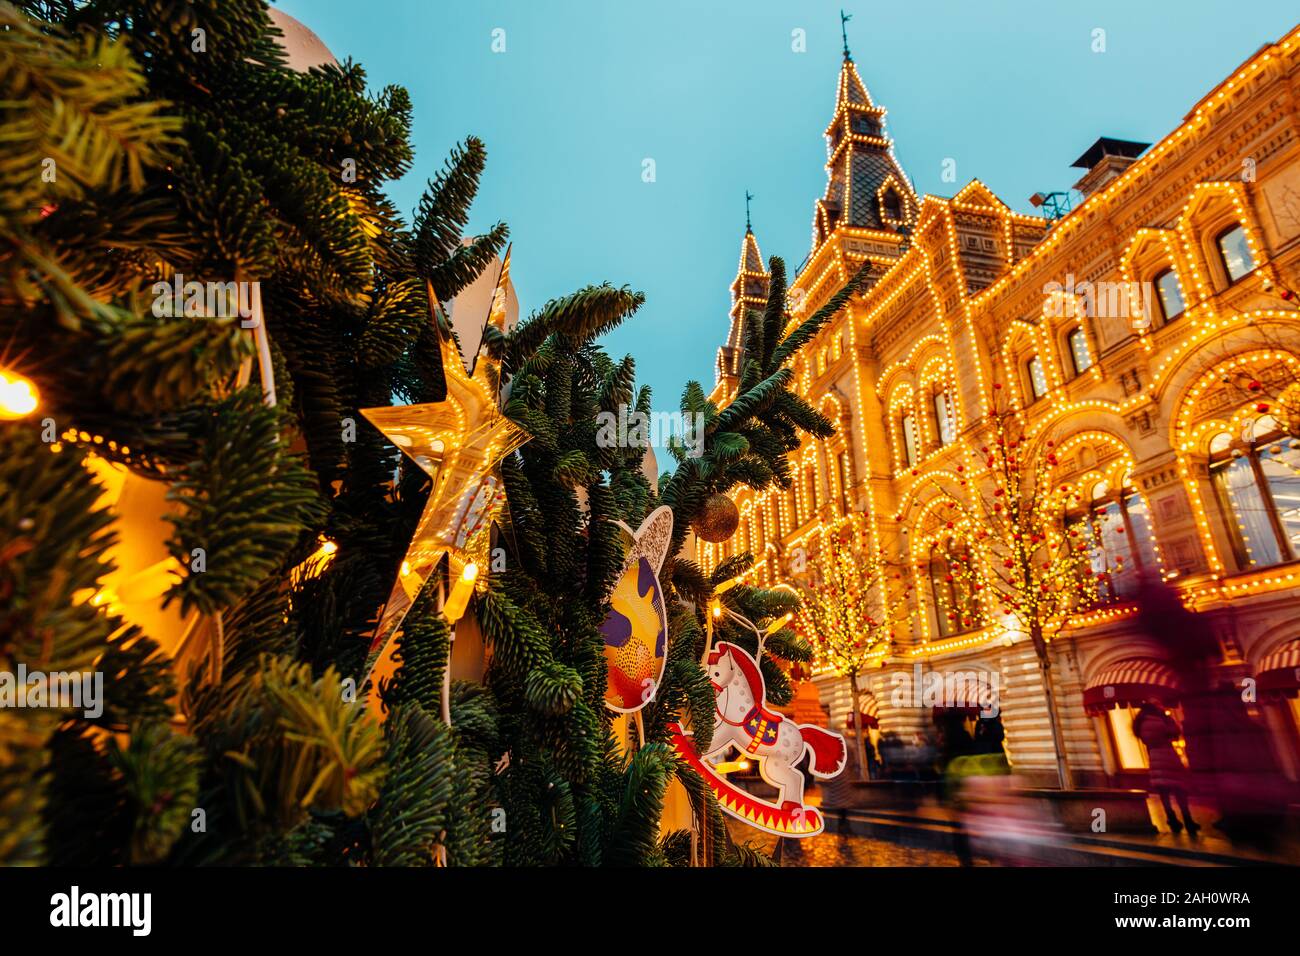 Weihnachten Dekorationen und beleuchteten Gummi Gebäude auf dem Roten Platz, Moskau, Russland Stockfoto